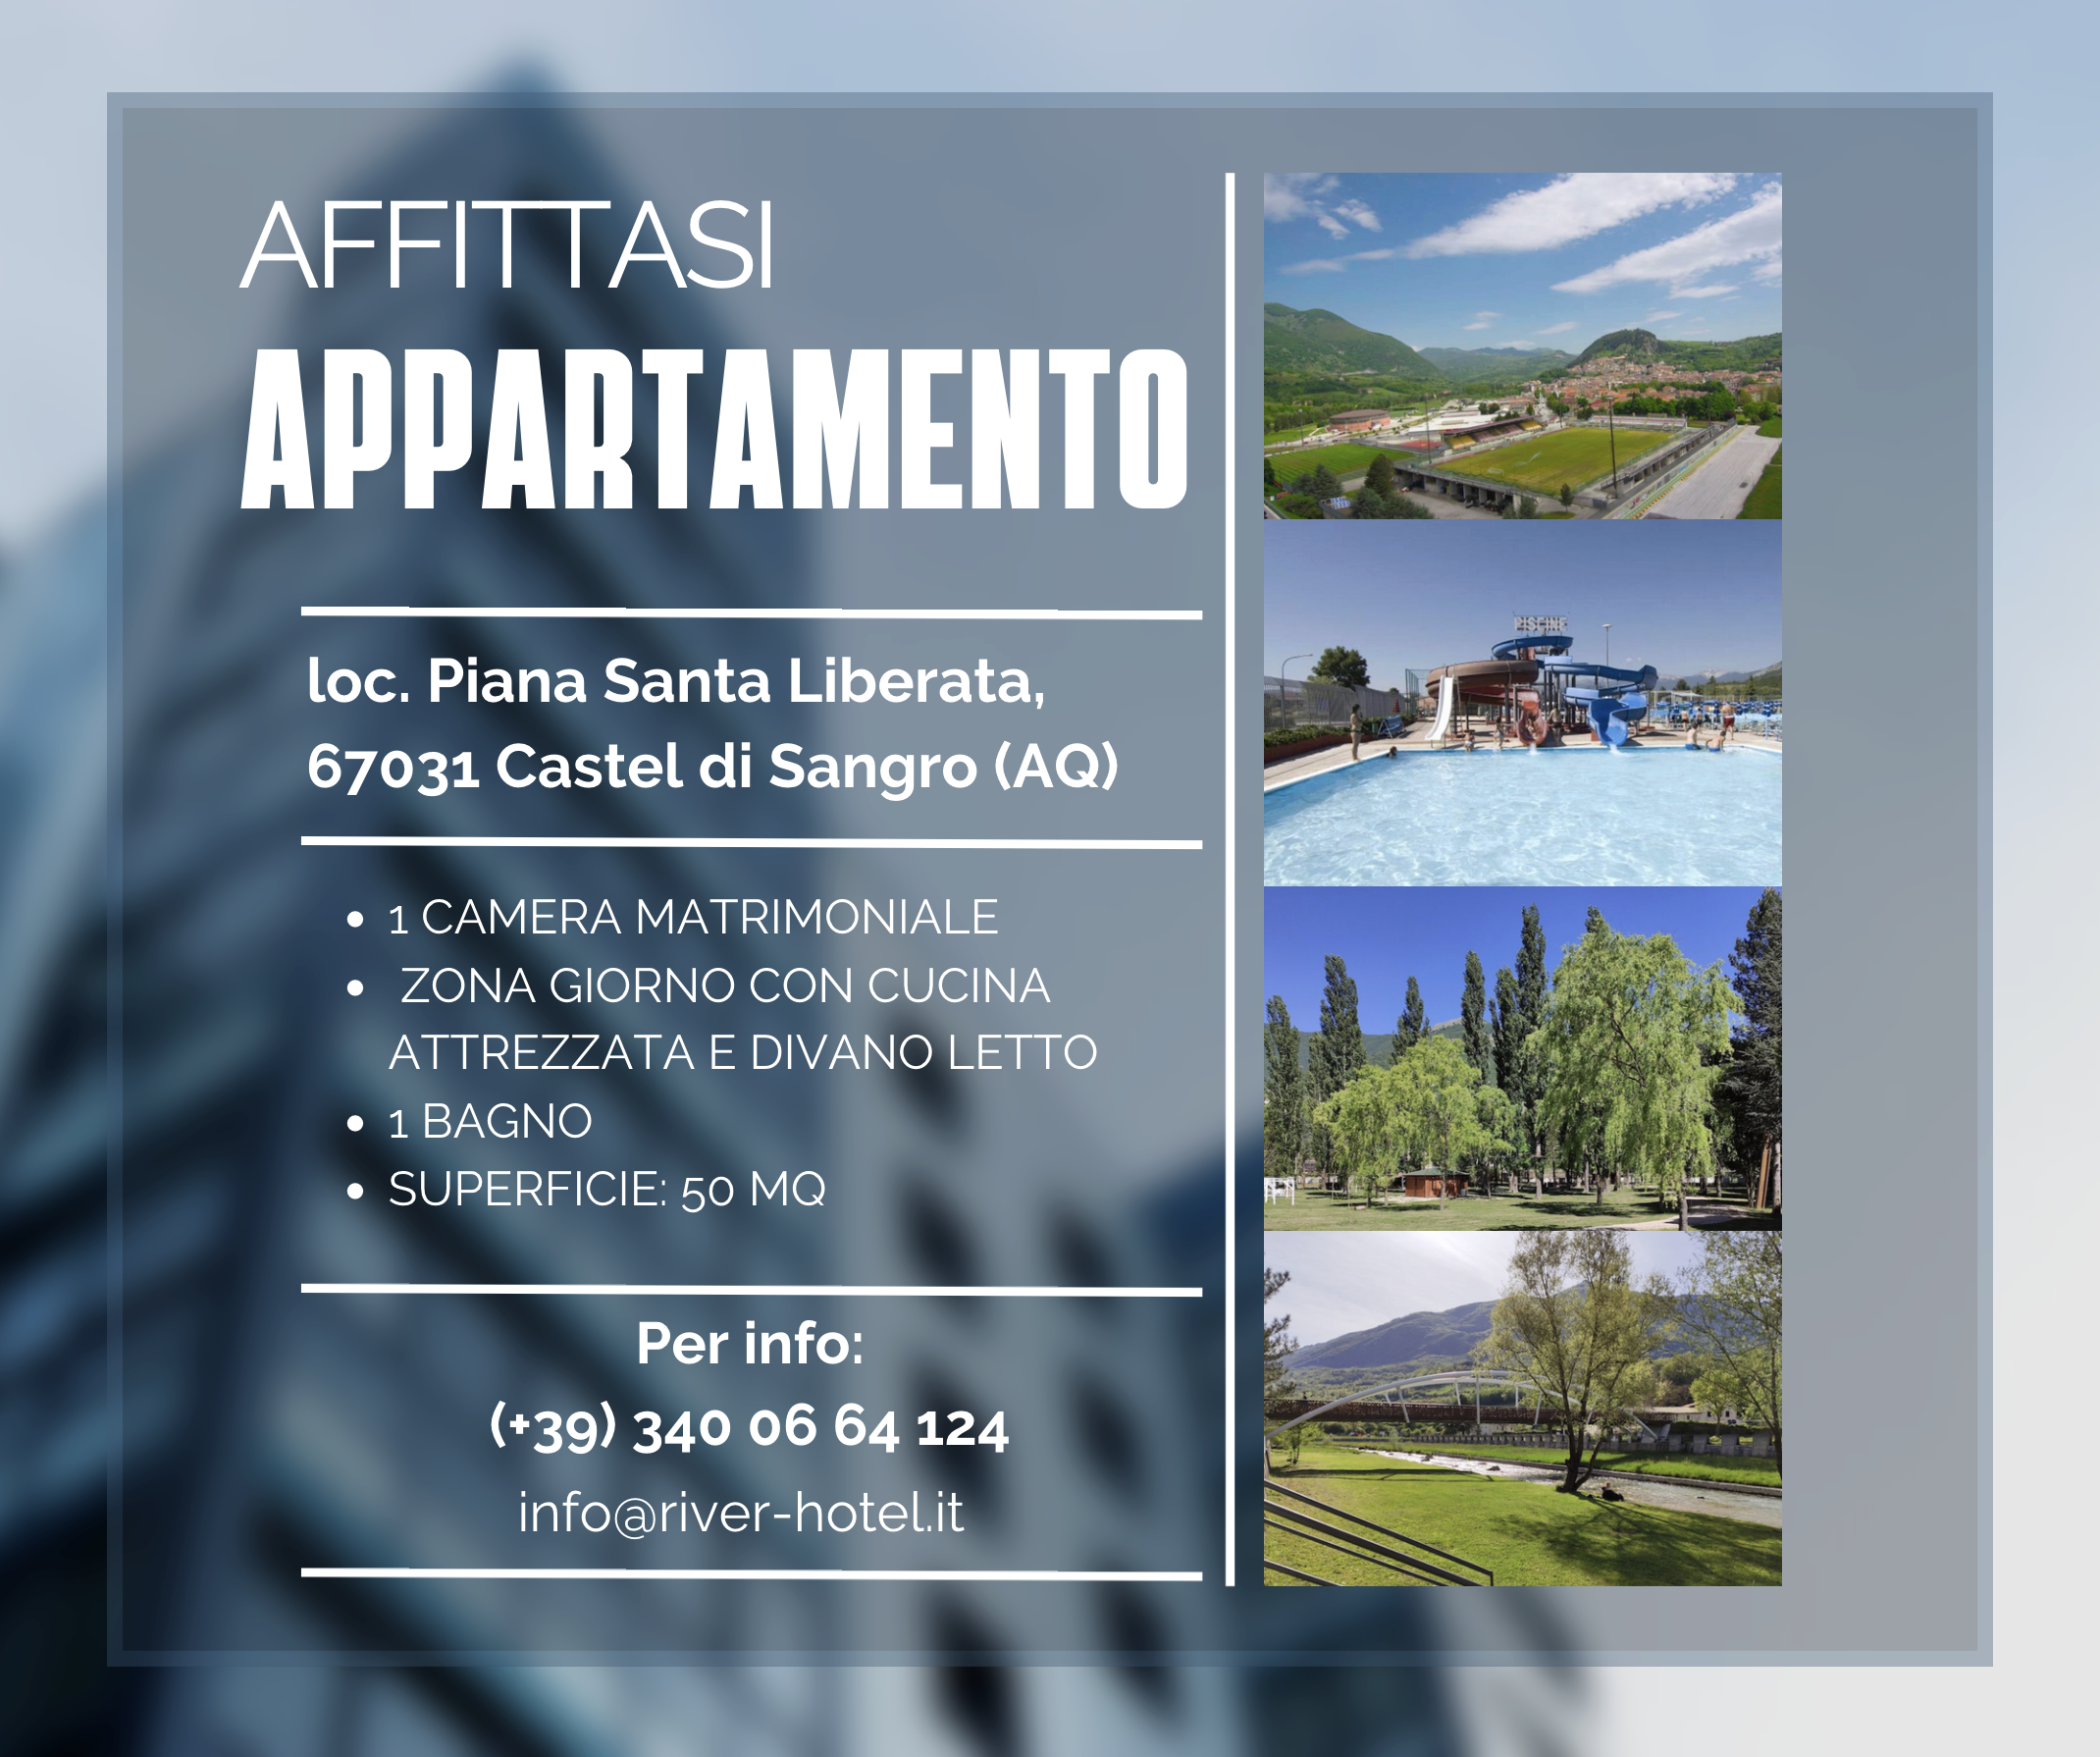 Affitto appartamento Castel di Sangro - Casa vacanze Castel di Sangro